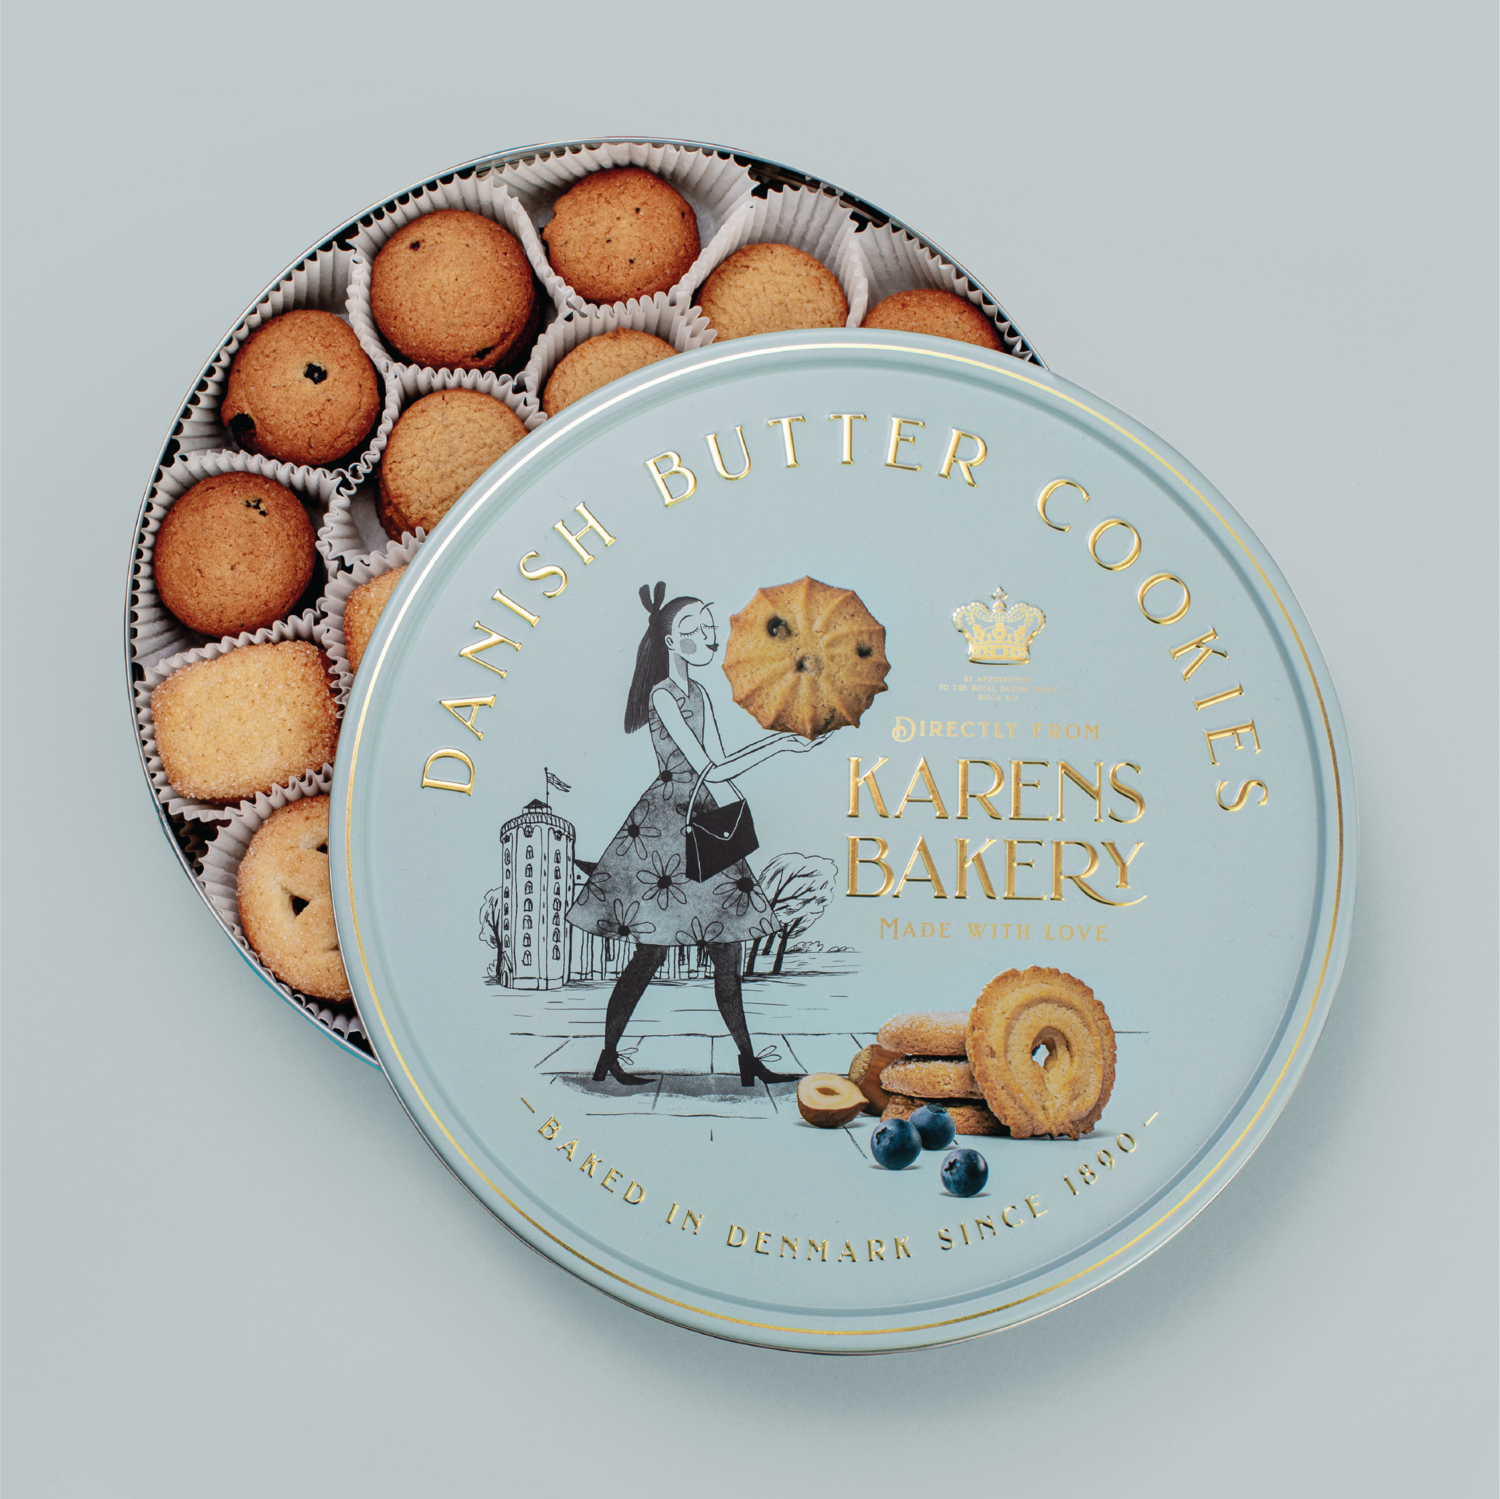 Karen's Cookies